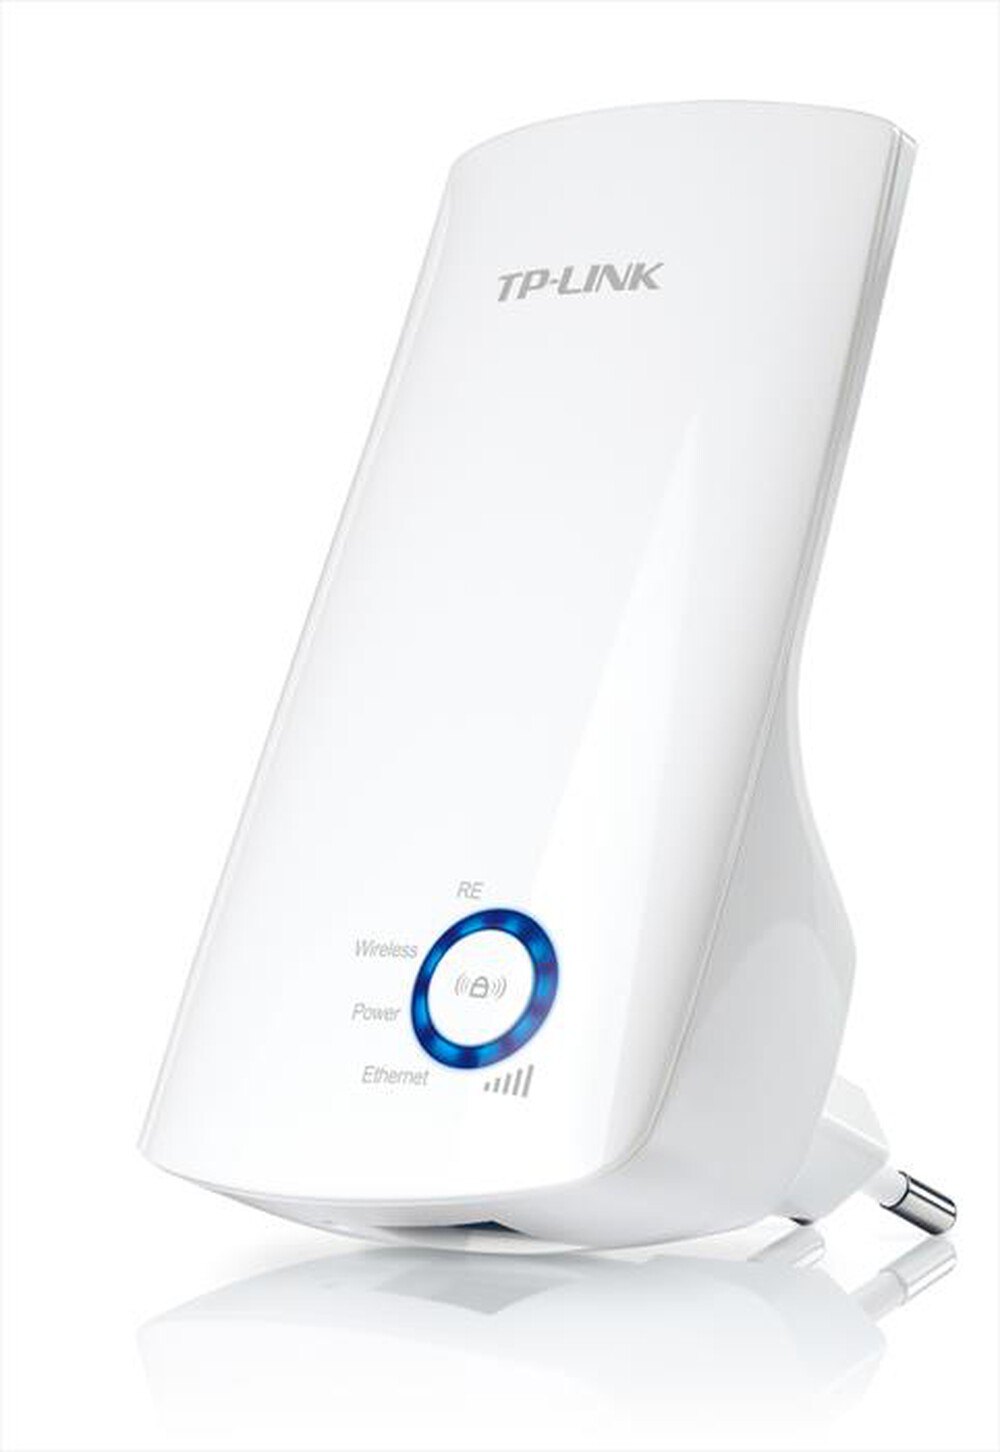 "TP-LINK - Pocket Range Extender N 300Mbps"